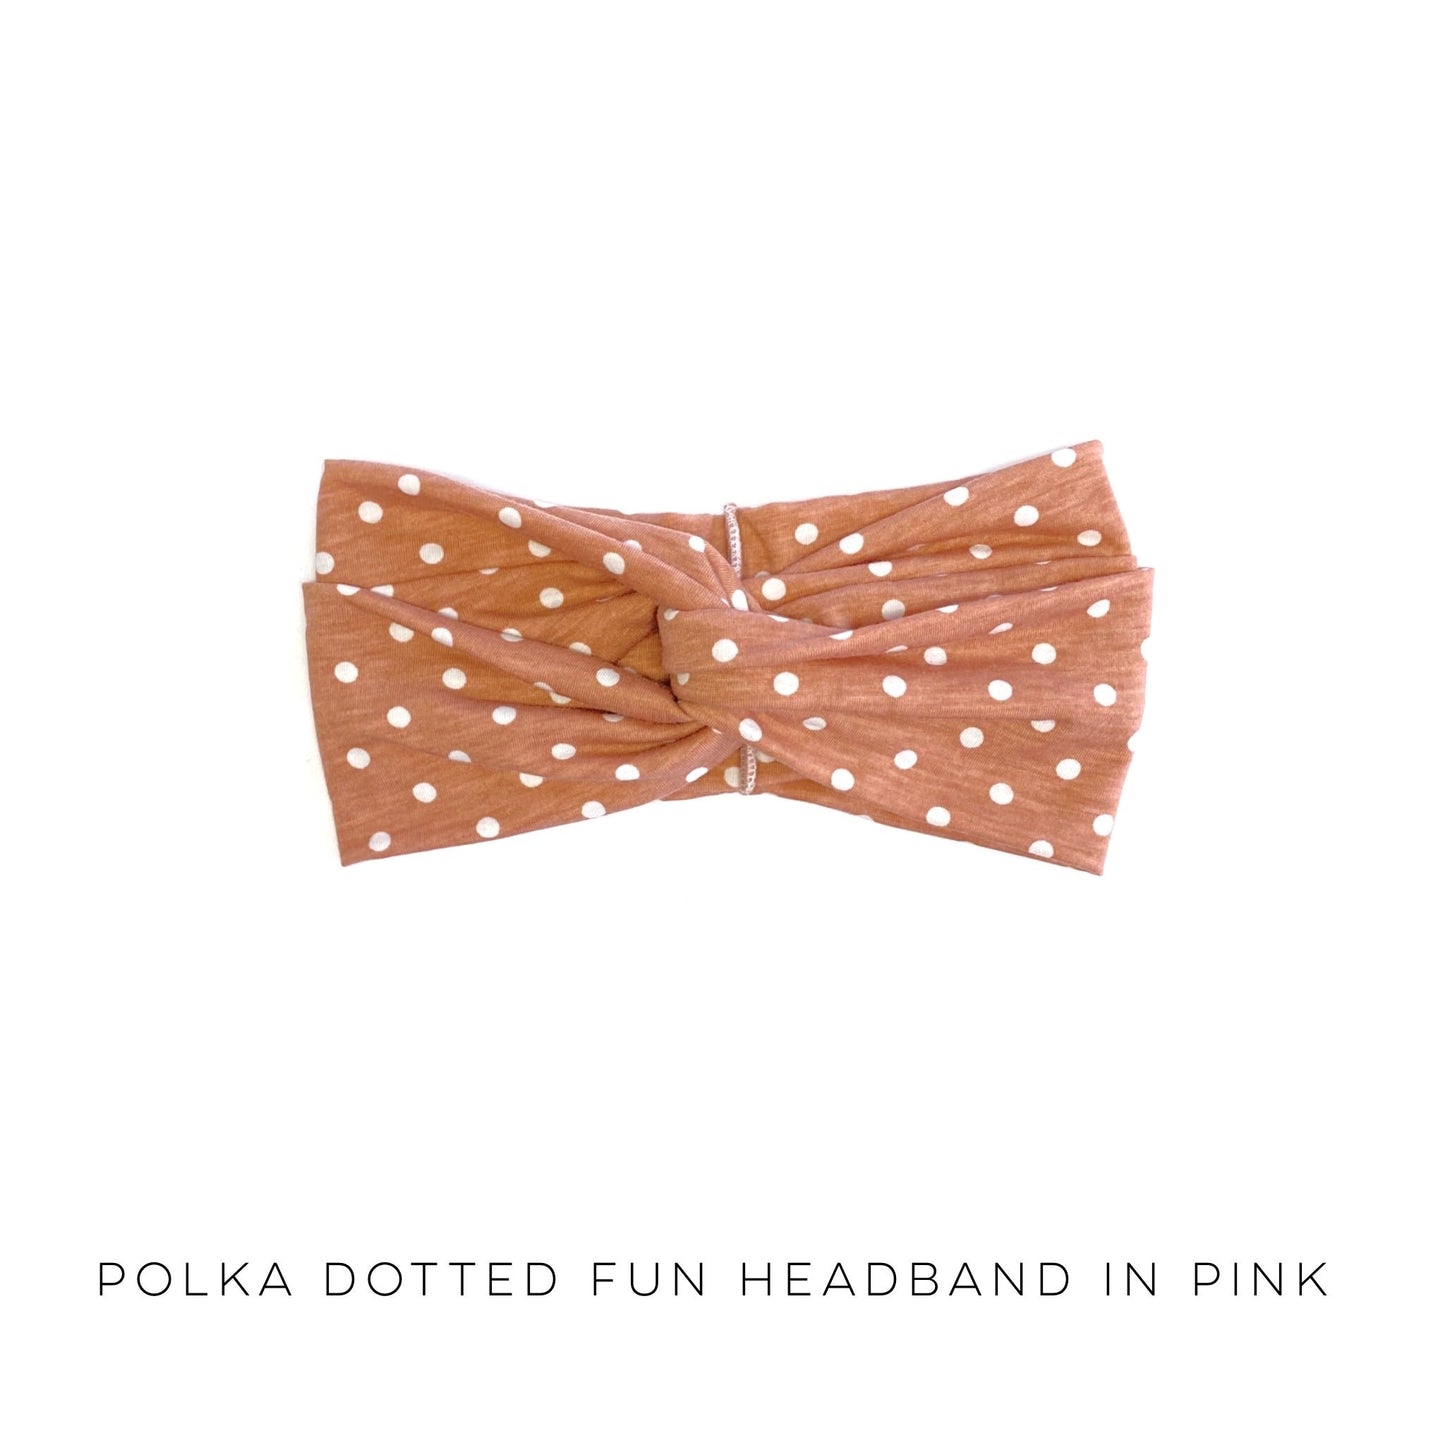 Polka Dotted Fun Headband in Pink